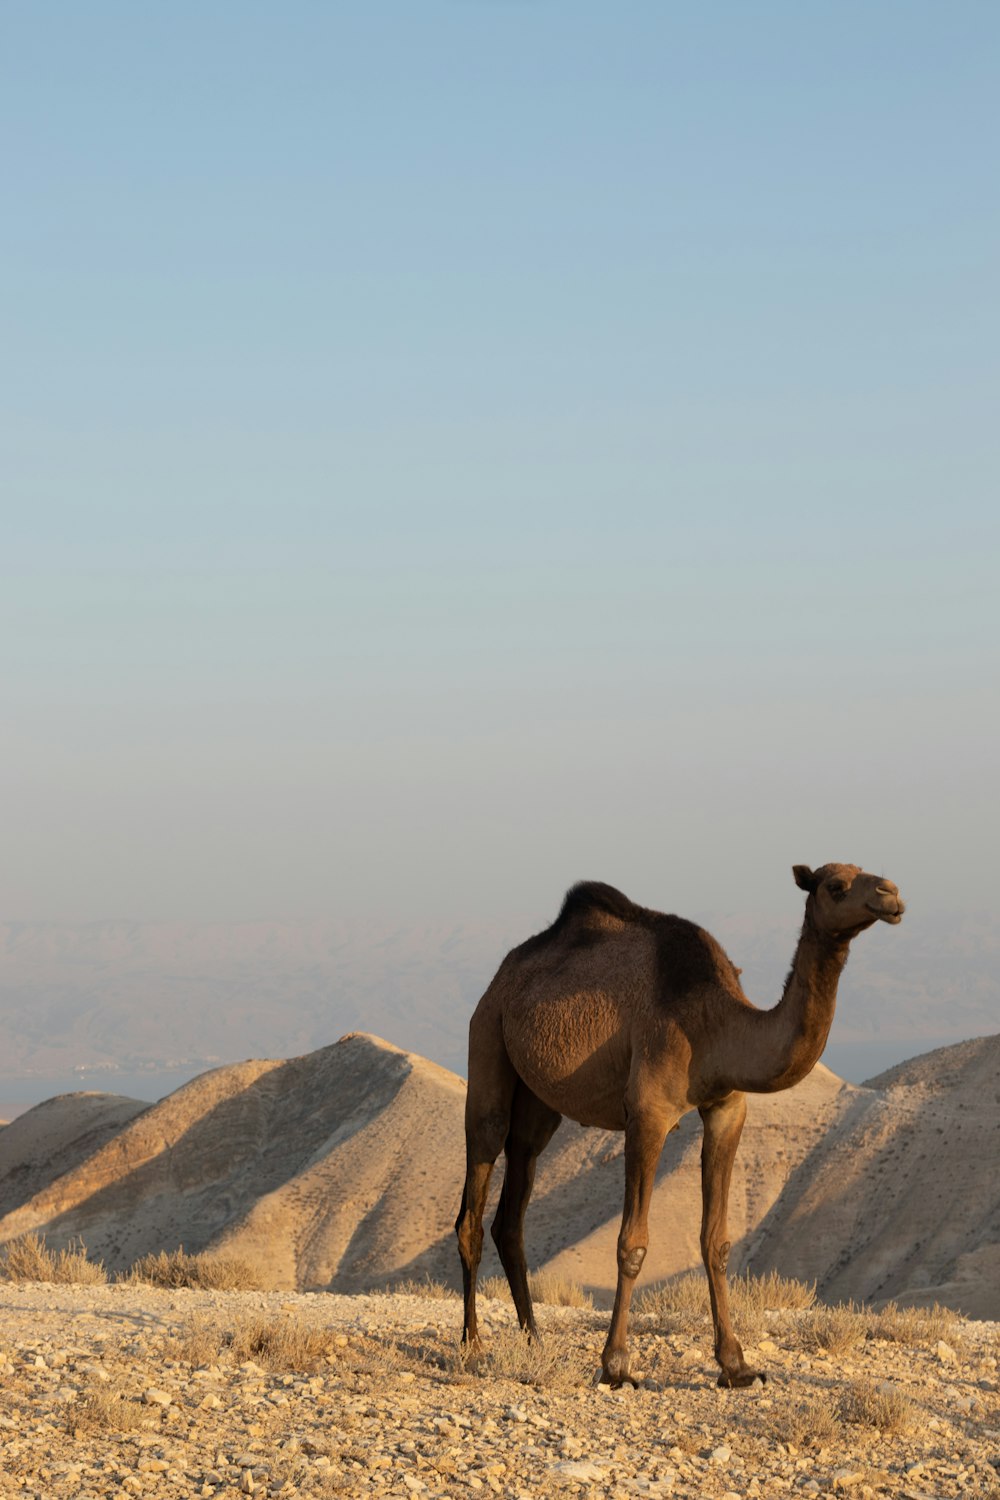 a camel standing on a desert